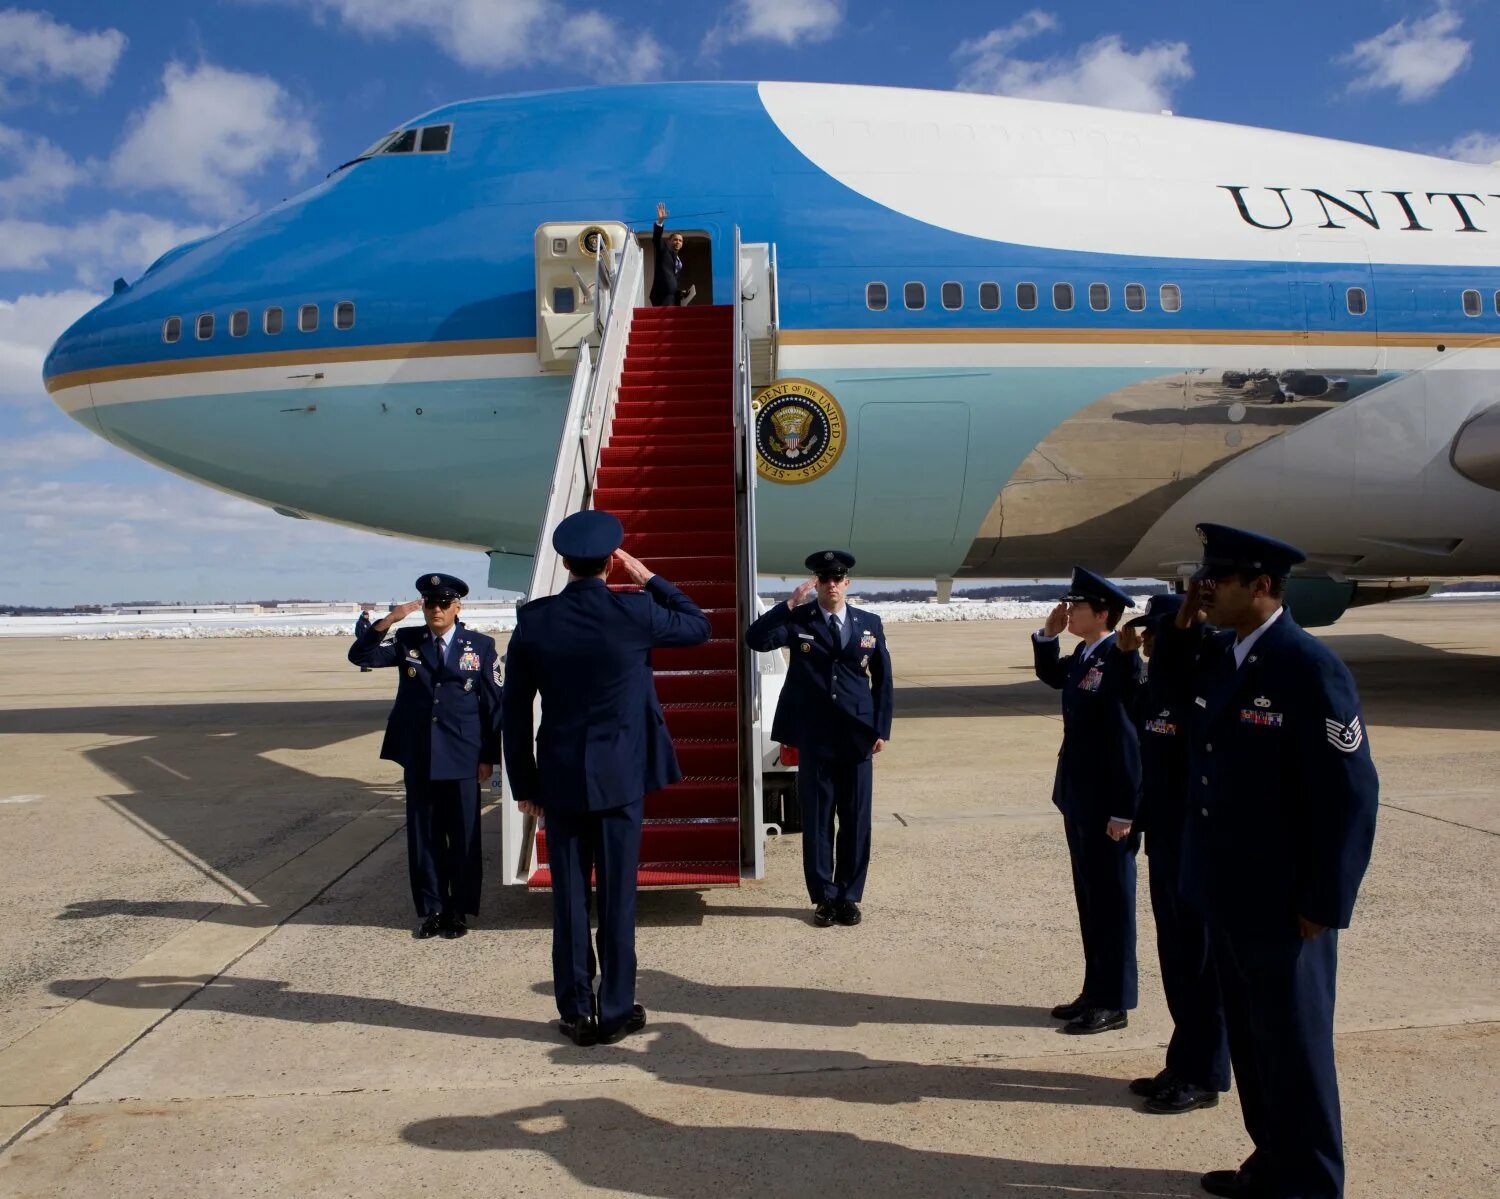 Президентский самолет. Борт номер 1 США. Самолет президента США. Air Force one самолет. Борт номер 1 президента США.